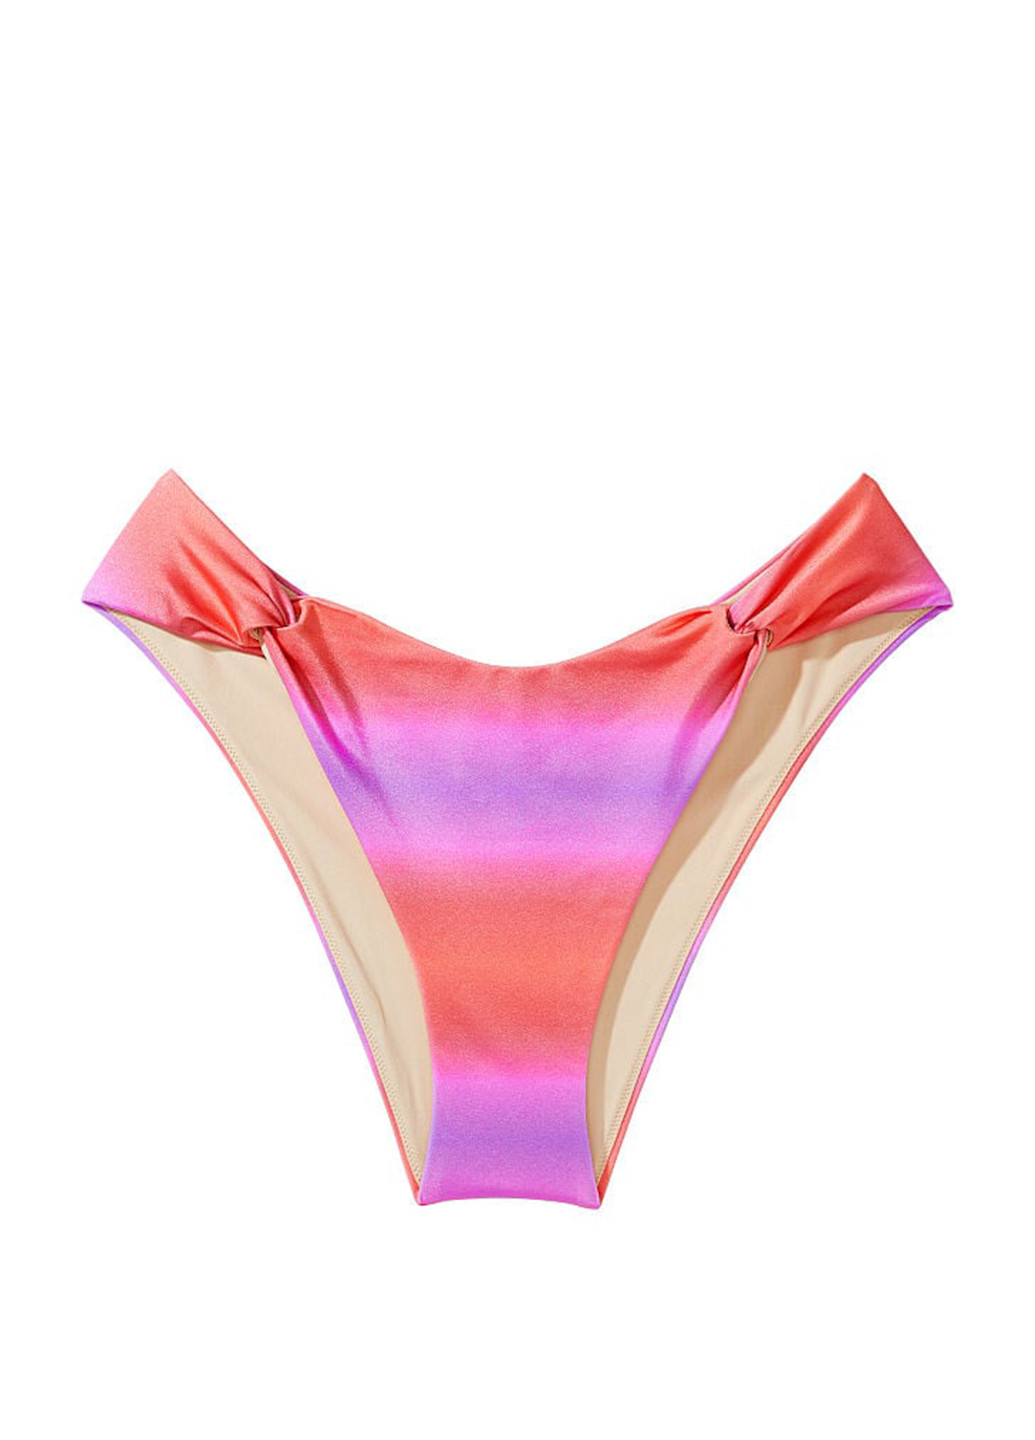 Розовый летний купальник (лиф, трусы) раздельный, бикини Victoria's Secret